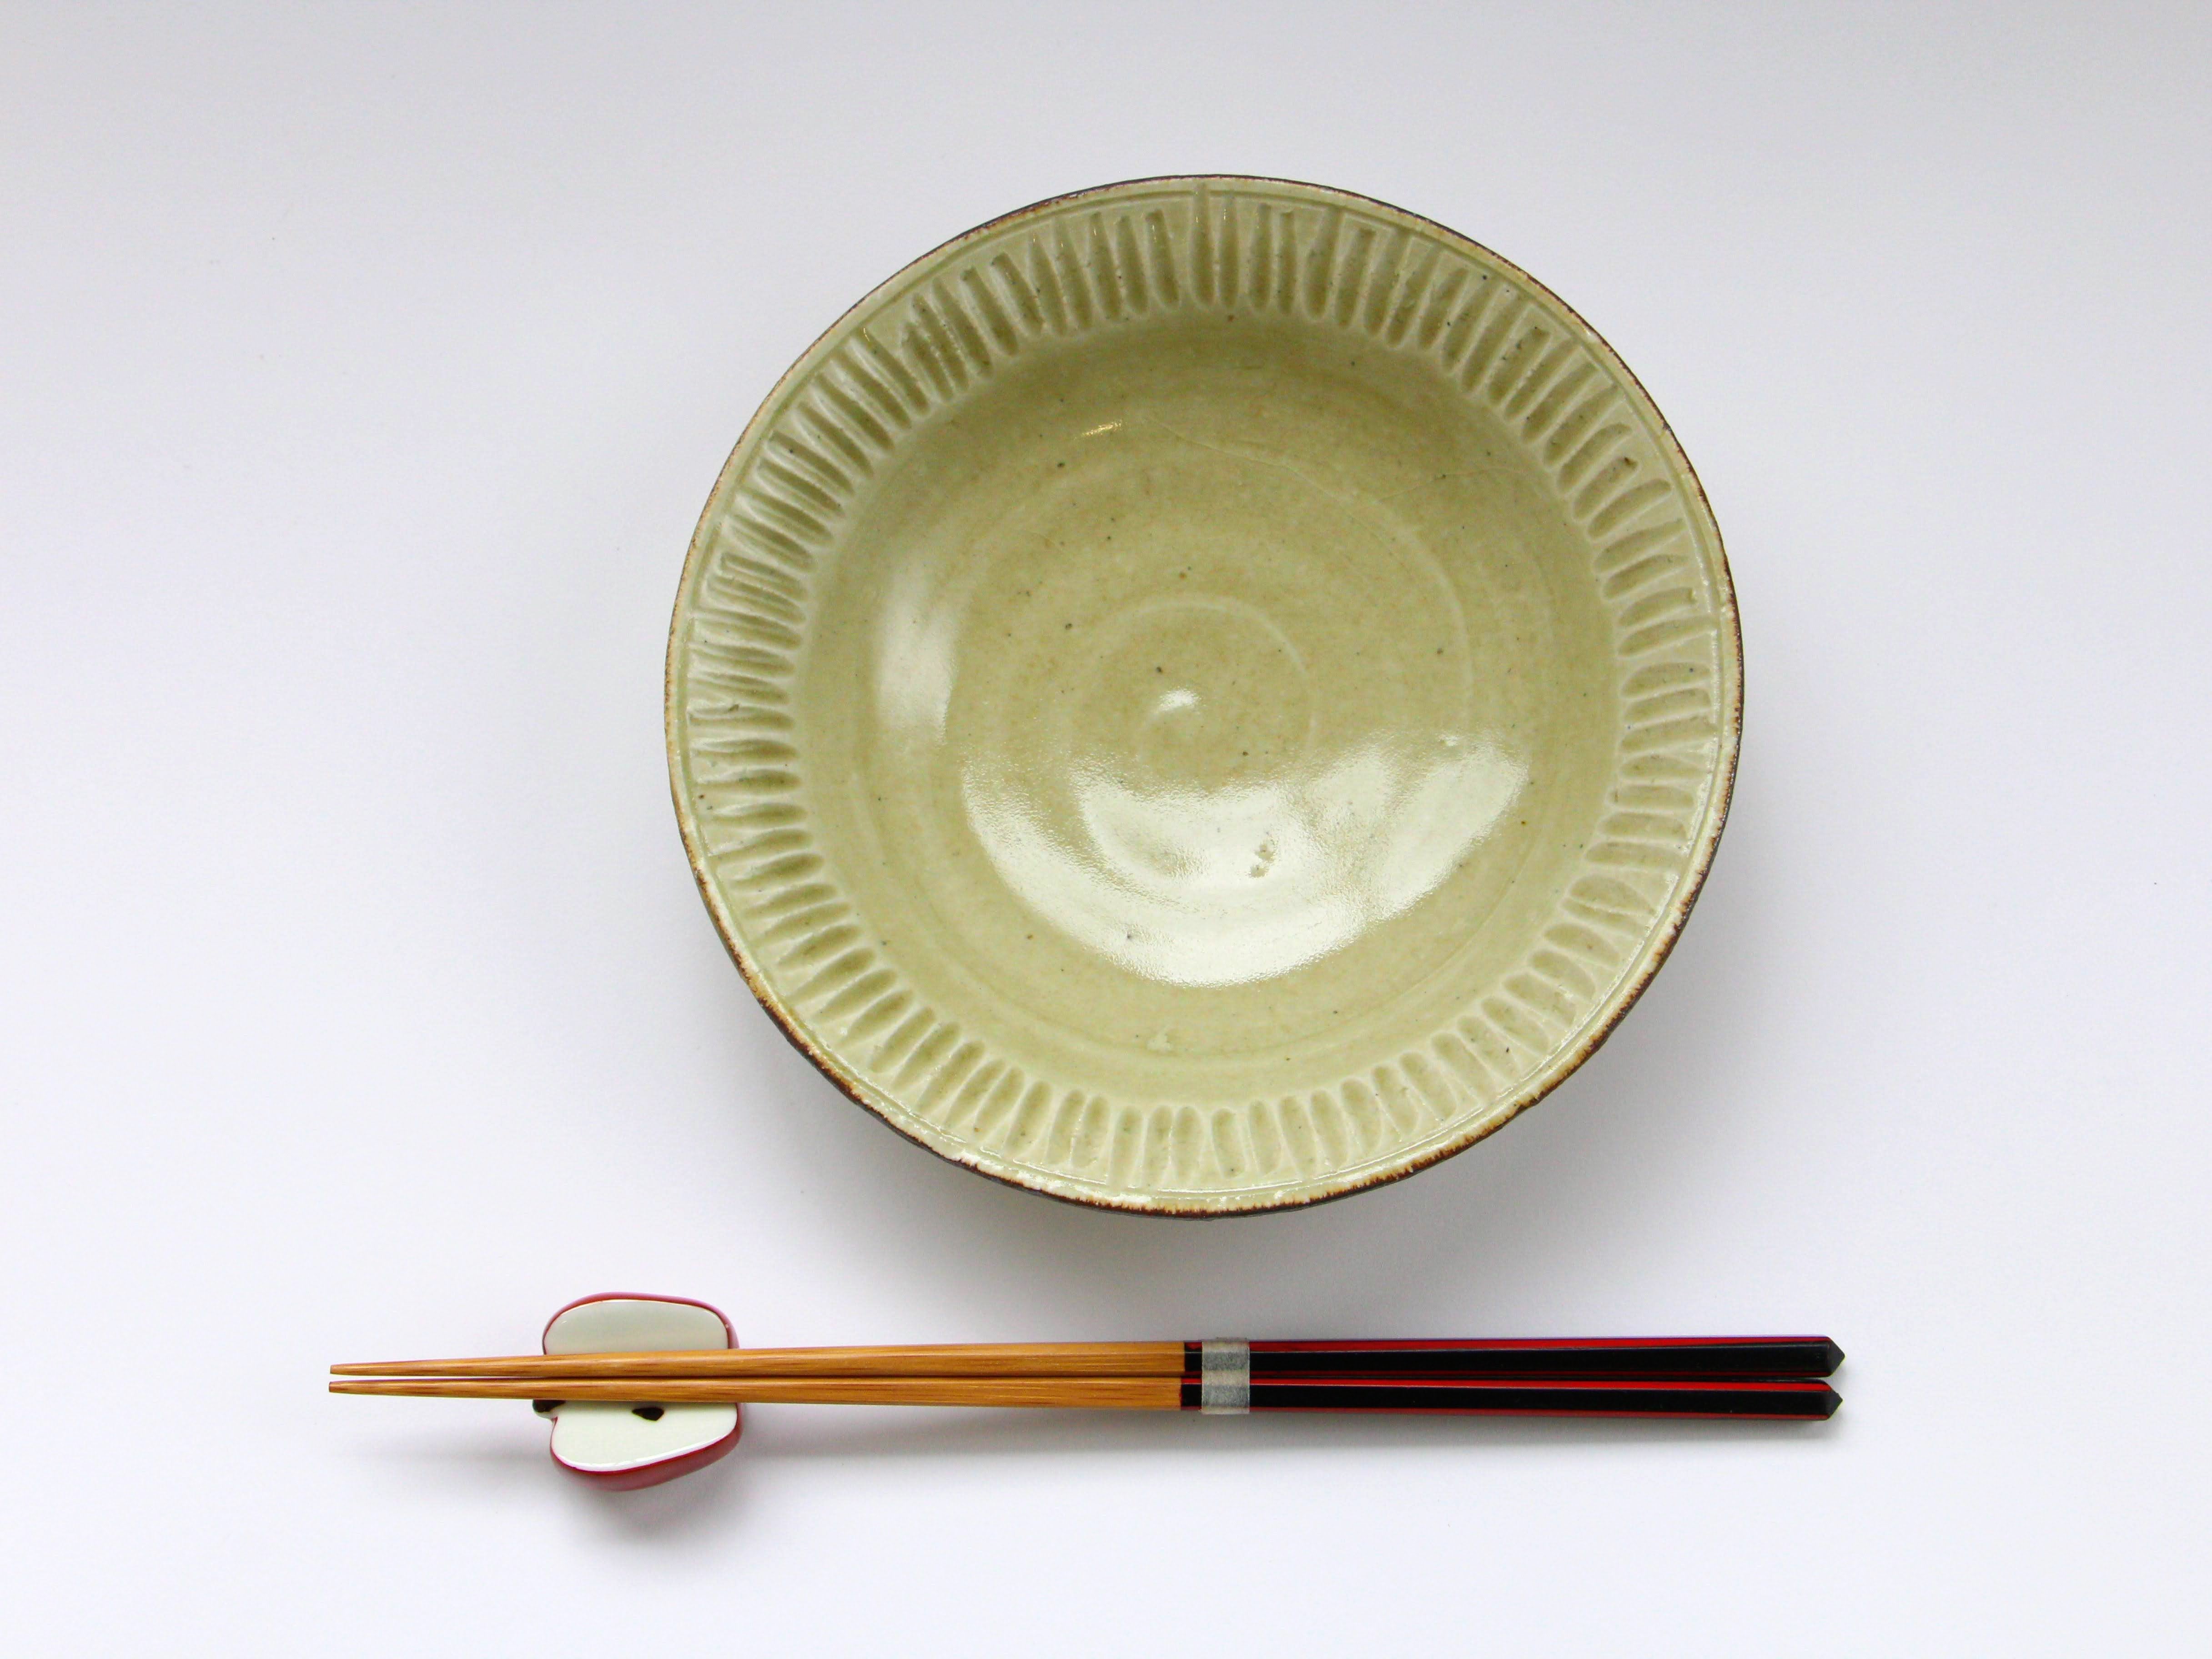 Ash glaze shinogitori bowl [Jun Kato]